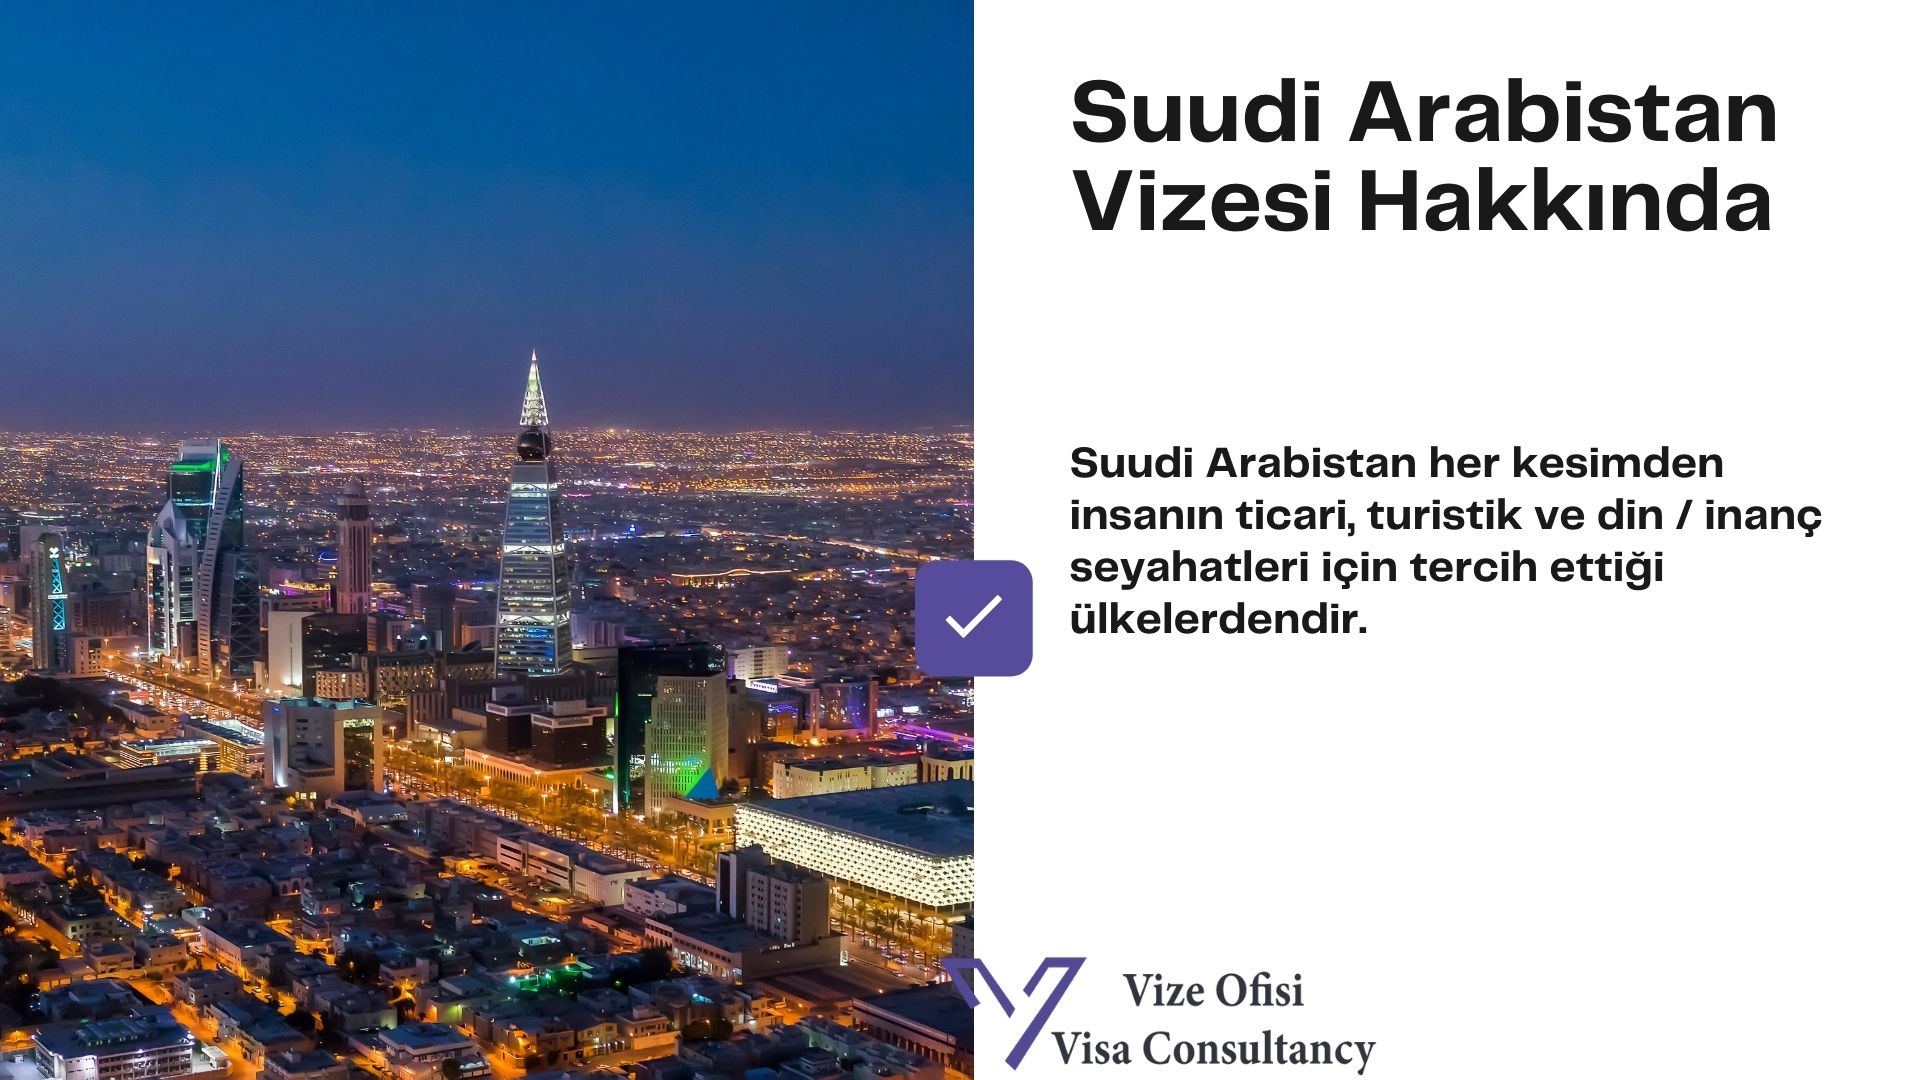 Suudi Arabistan Vizesi 2021 Vize Başvurusu